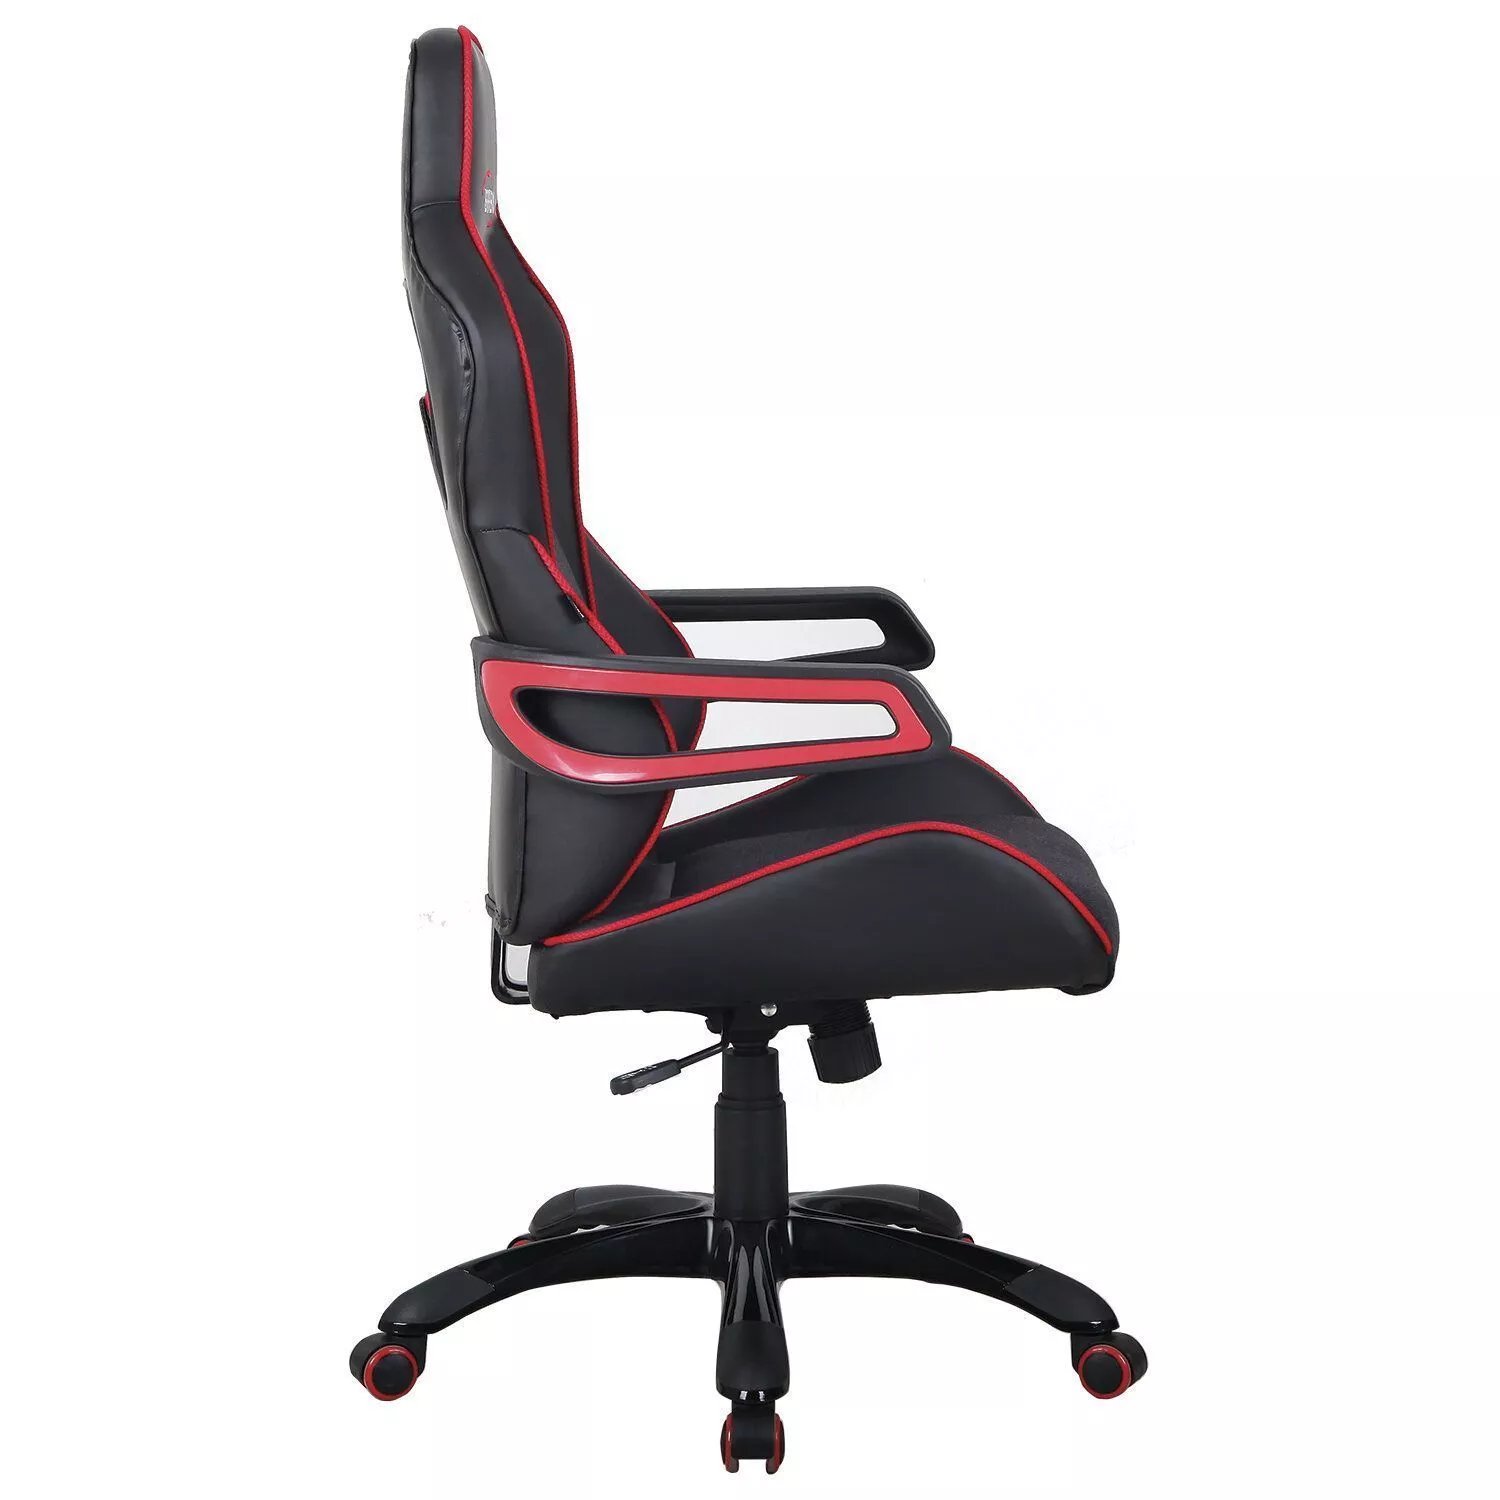 Геймерское кресло BRABIX Nitro GM-001 Черный красный 531816